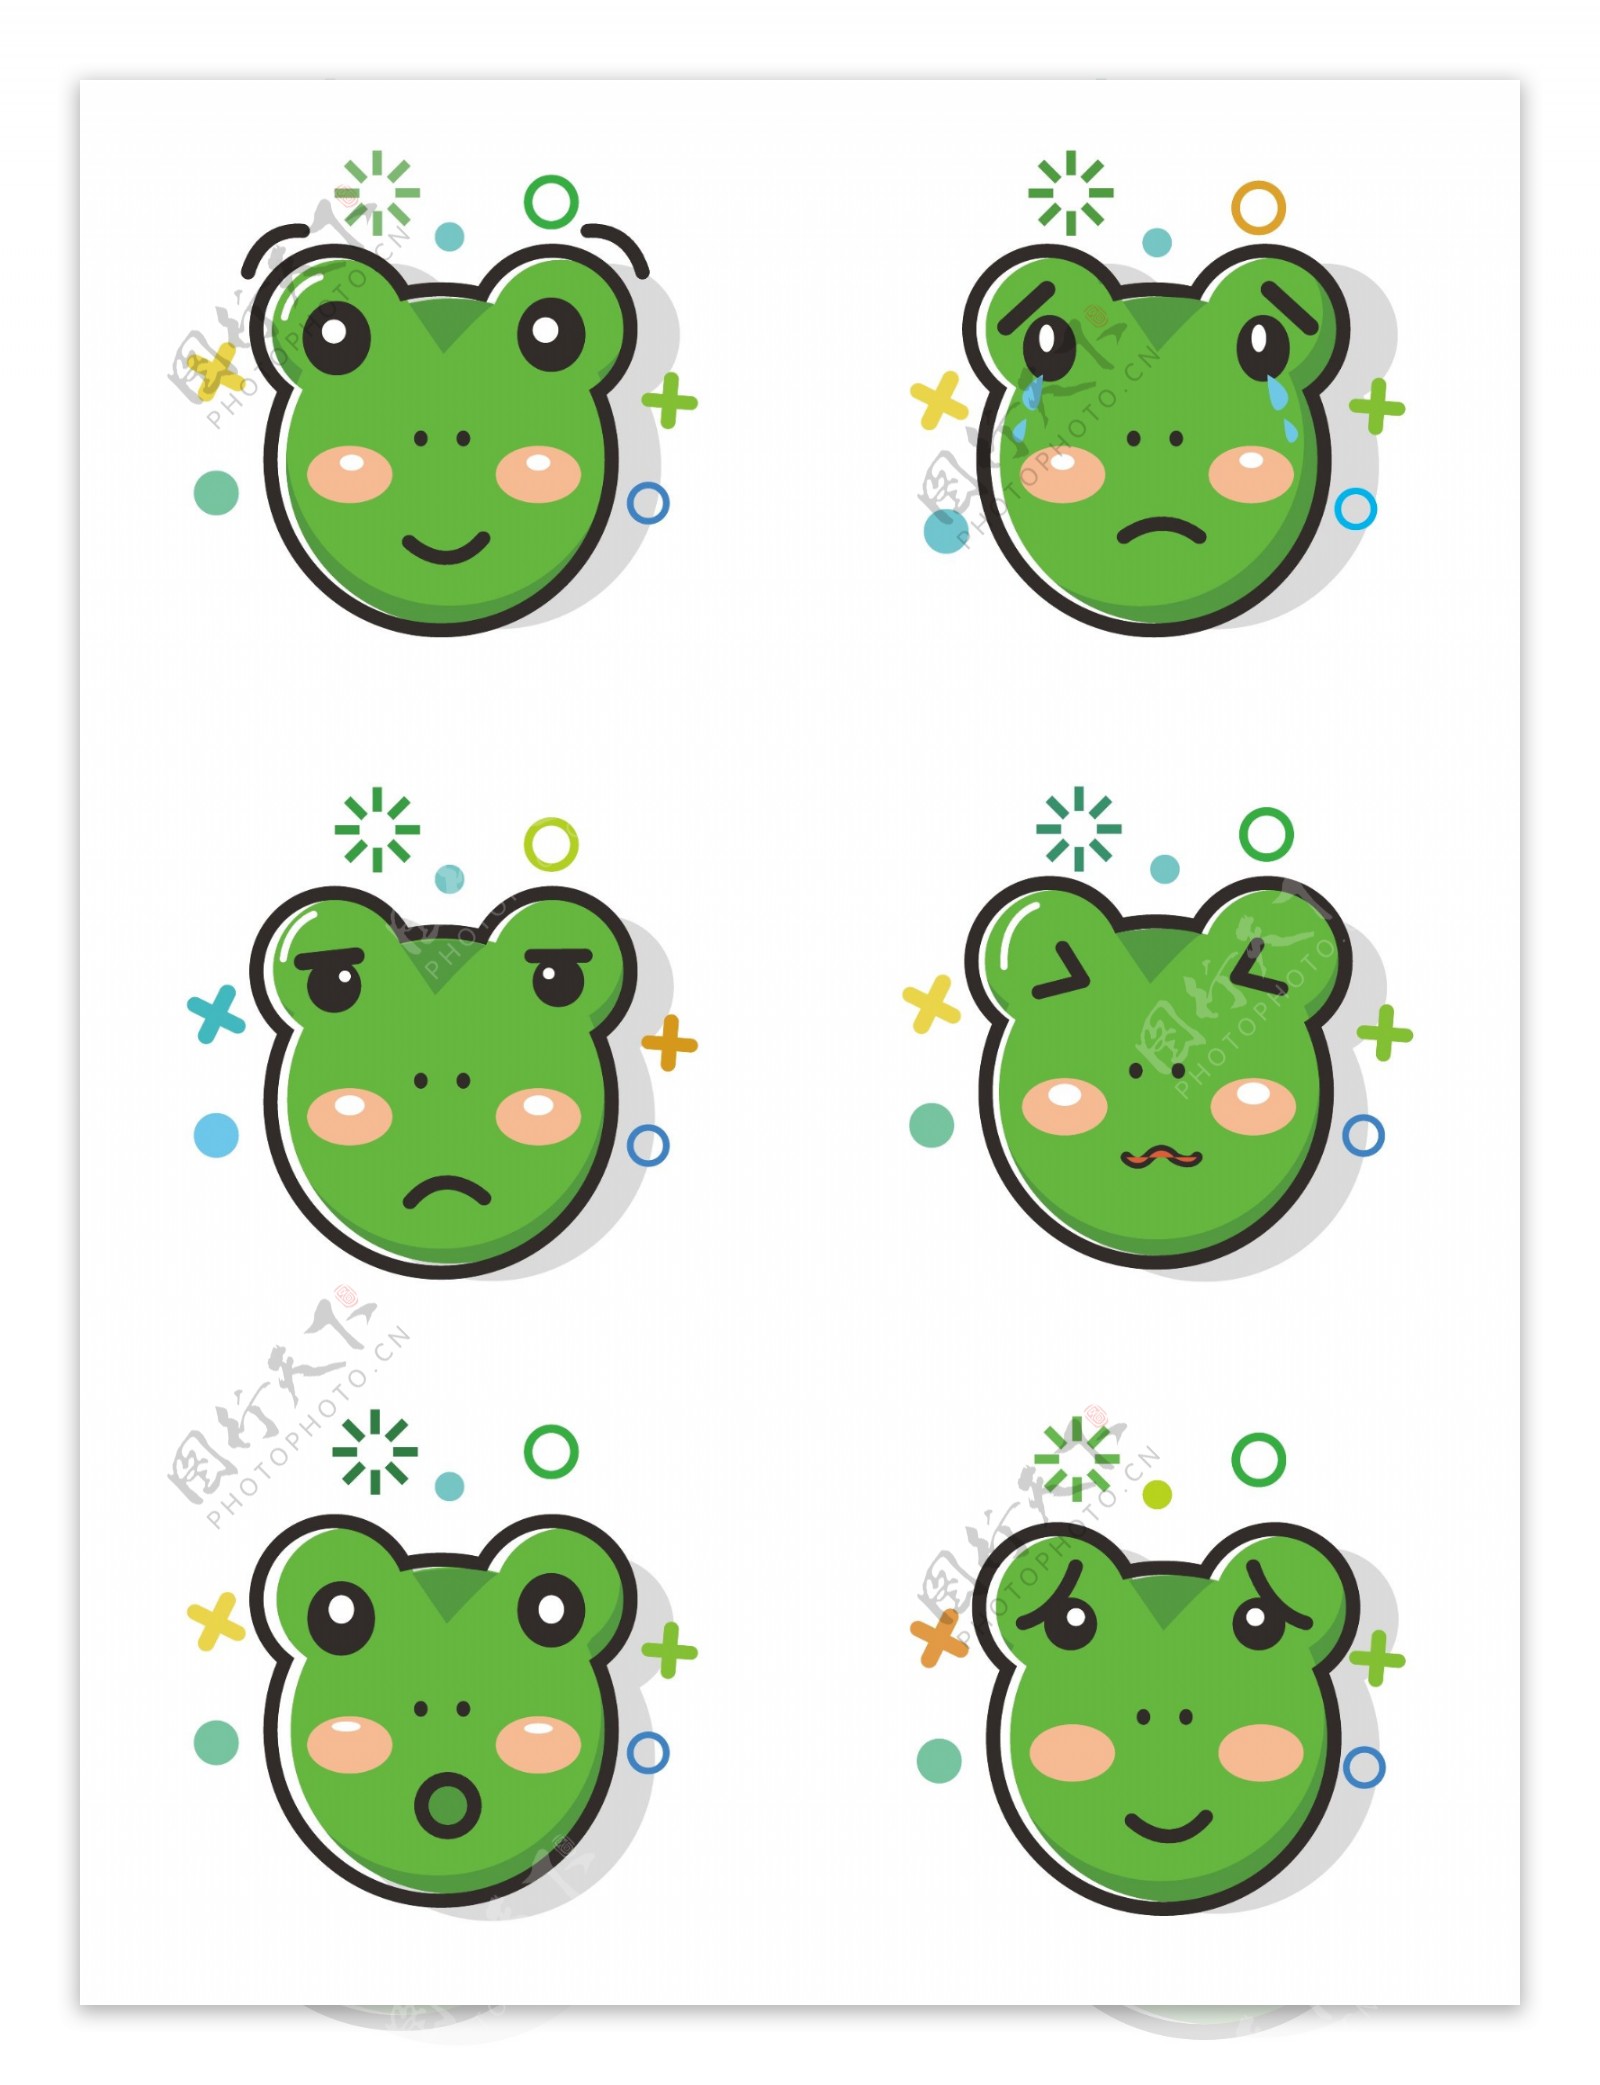 青蛙mbe表情包套图可商用元素